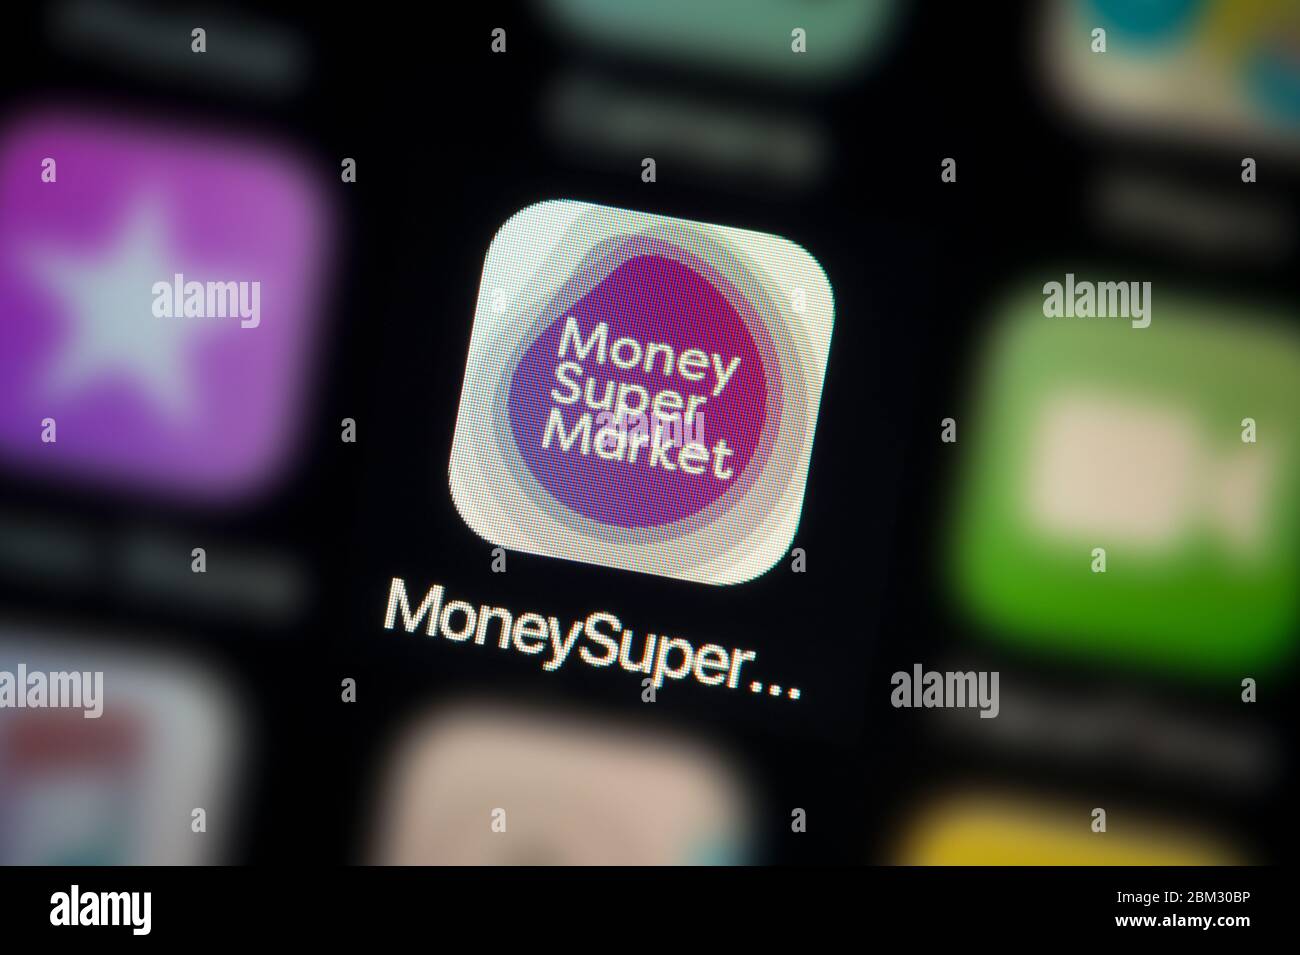 Nahaufnahme des Symbols der Money Supermarket App, wie auf dem Bildschirm eines Smartphones zu sehen (nur für redaktionelle Zwecke) Stockfoto